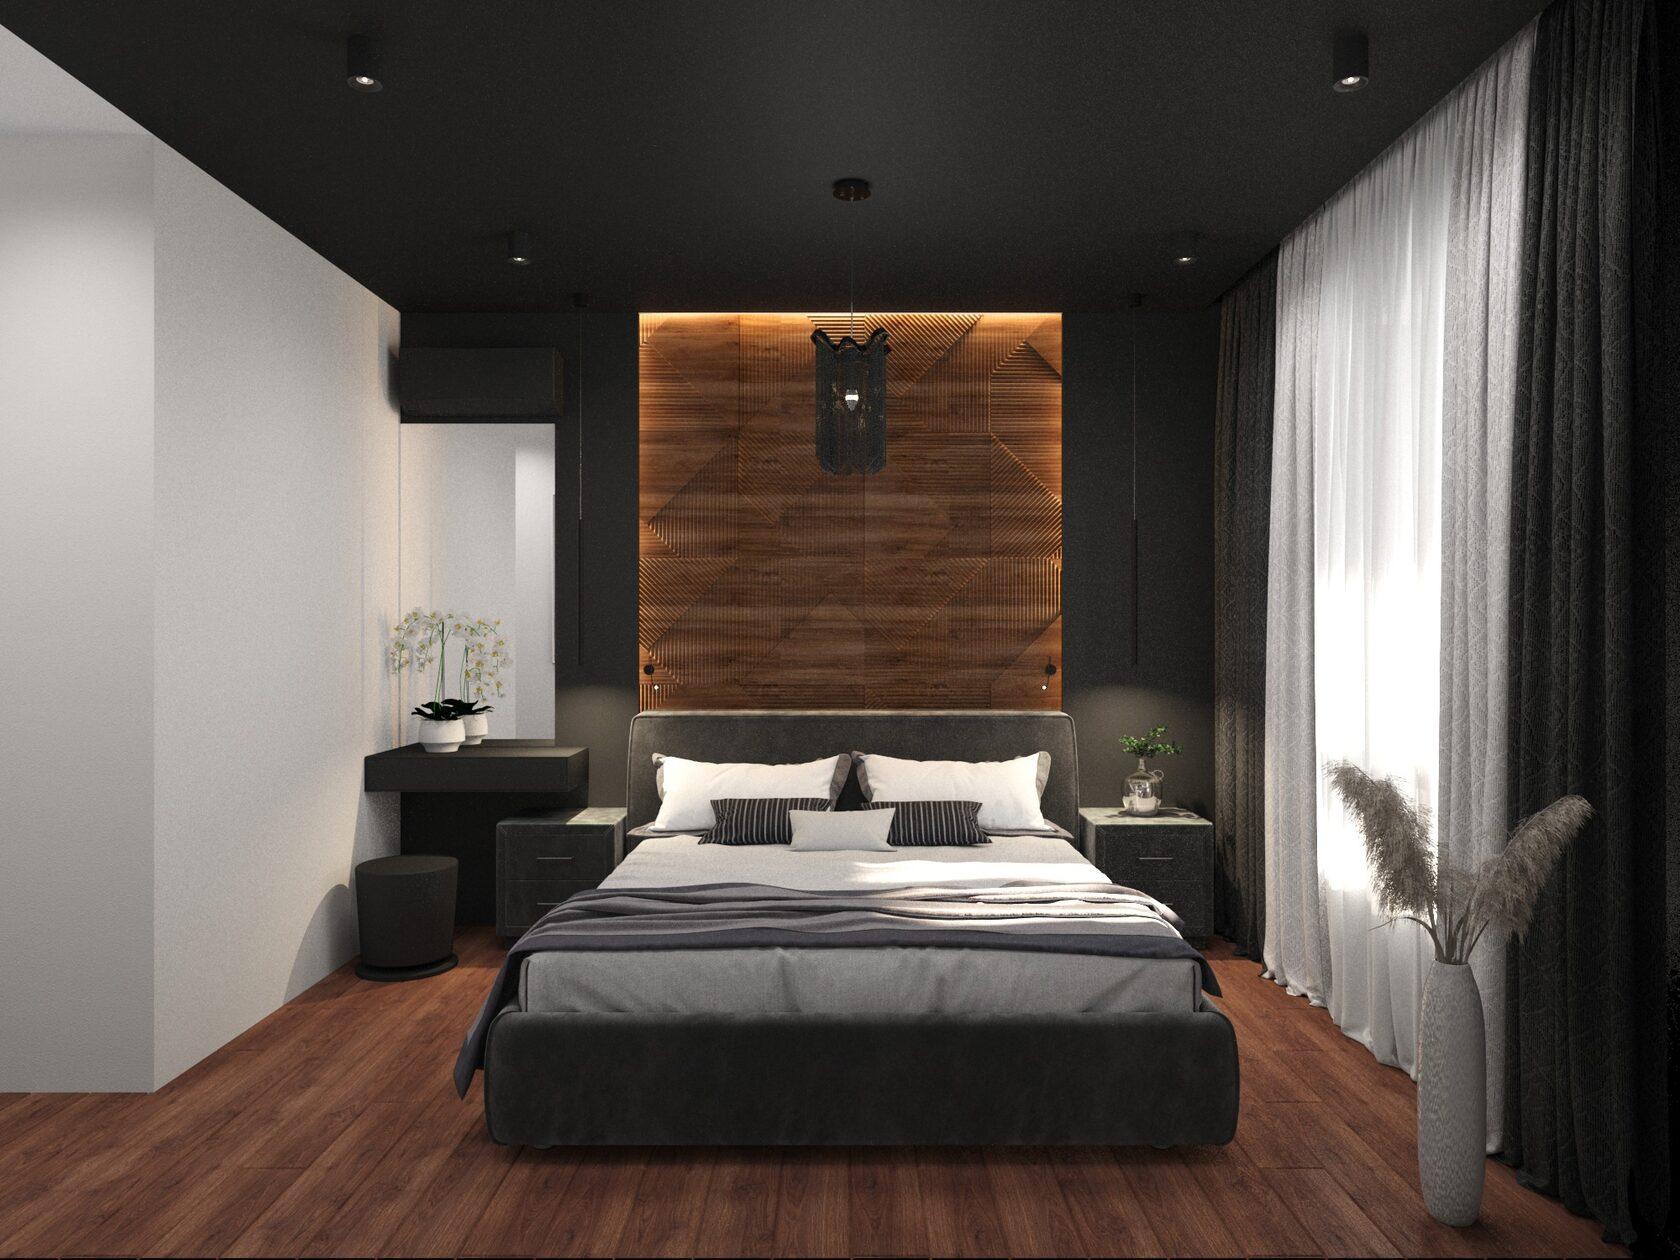 Интерьер спальни с рейками с подсветкой, бра над кроватью, подсветкой настенной, светильниками над кроватью и шкафом над кроватью в стиле лофт и эко